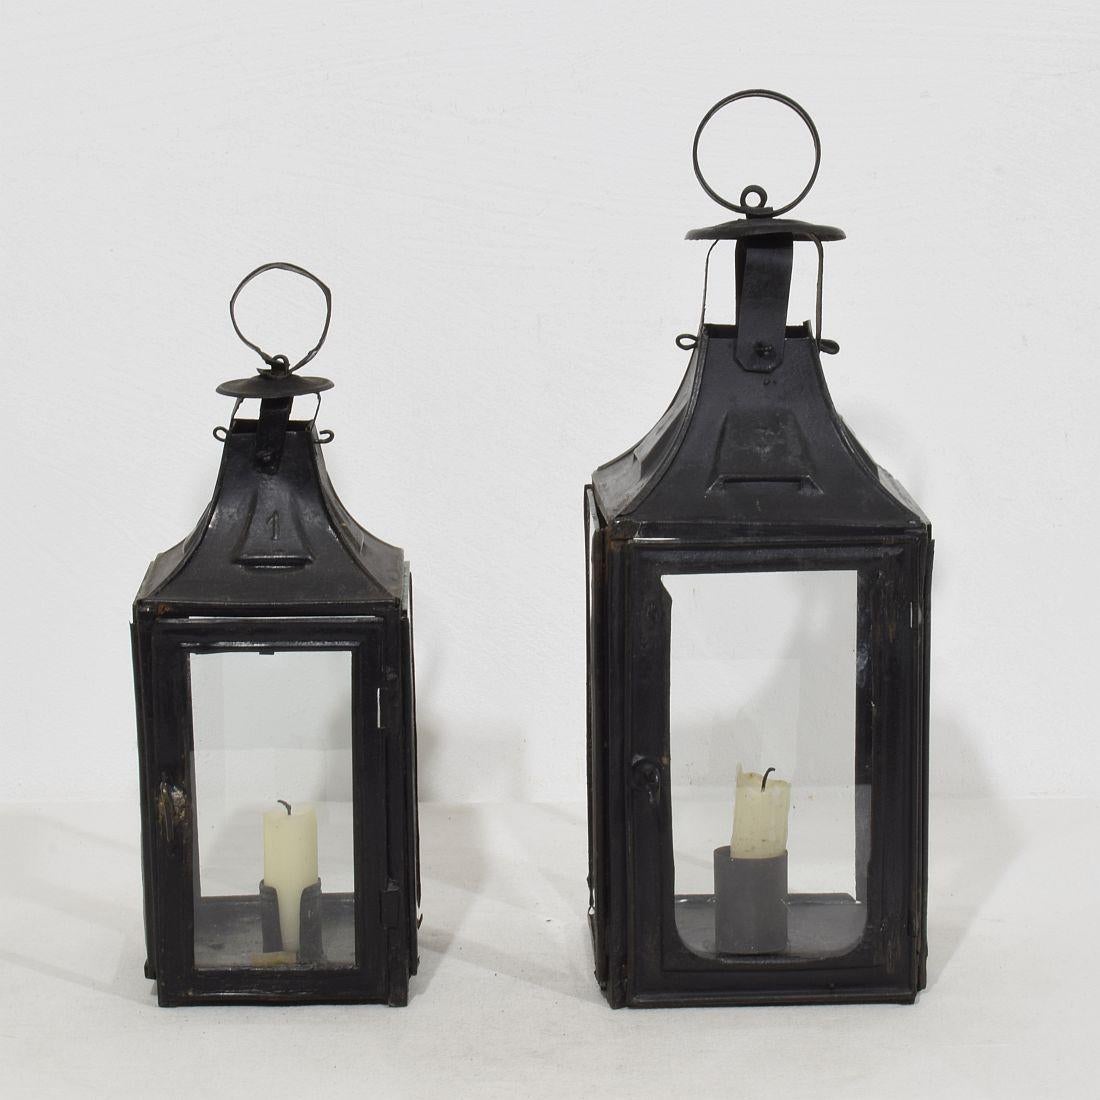 Belle paire de lanternes en métal, France, vers 1850-1900.
Réparations anciennes et altérées par les intempéries (certaines vitres ont été remplacées)
Mesures : H:26,5-32,5cm  W:10,5-12,5cm
Mesure ci-dessous de la plus grande lanterne.